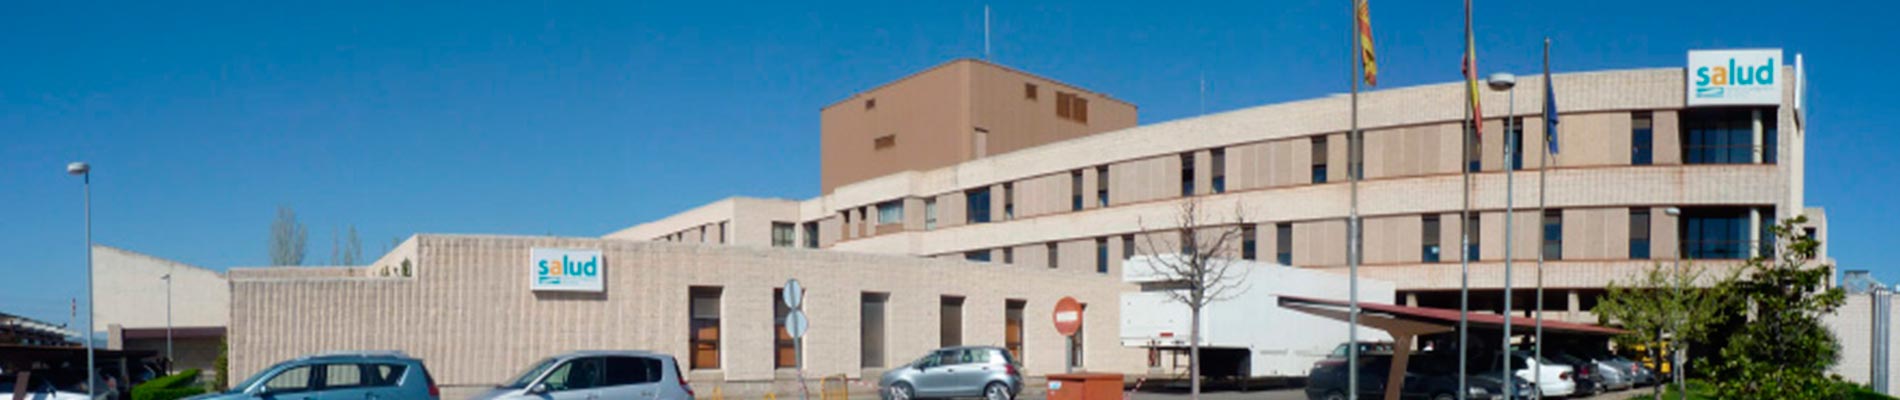 Hospital Ernest Lluch (Calatayud)